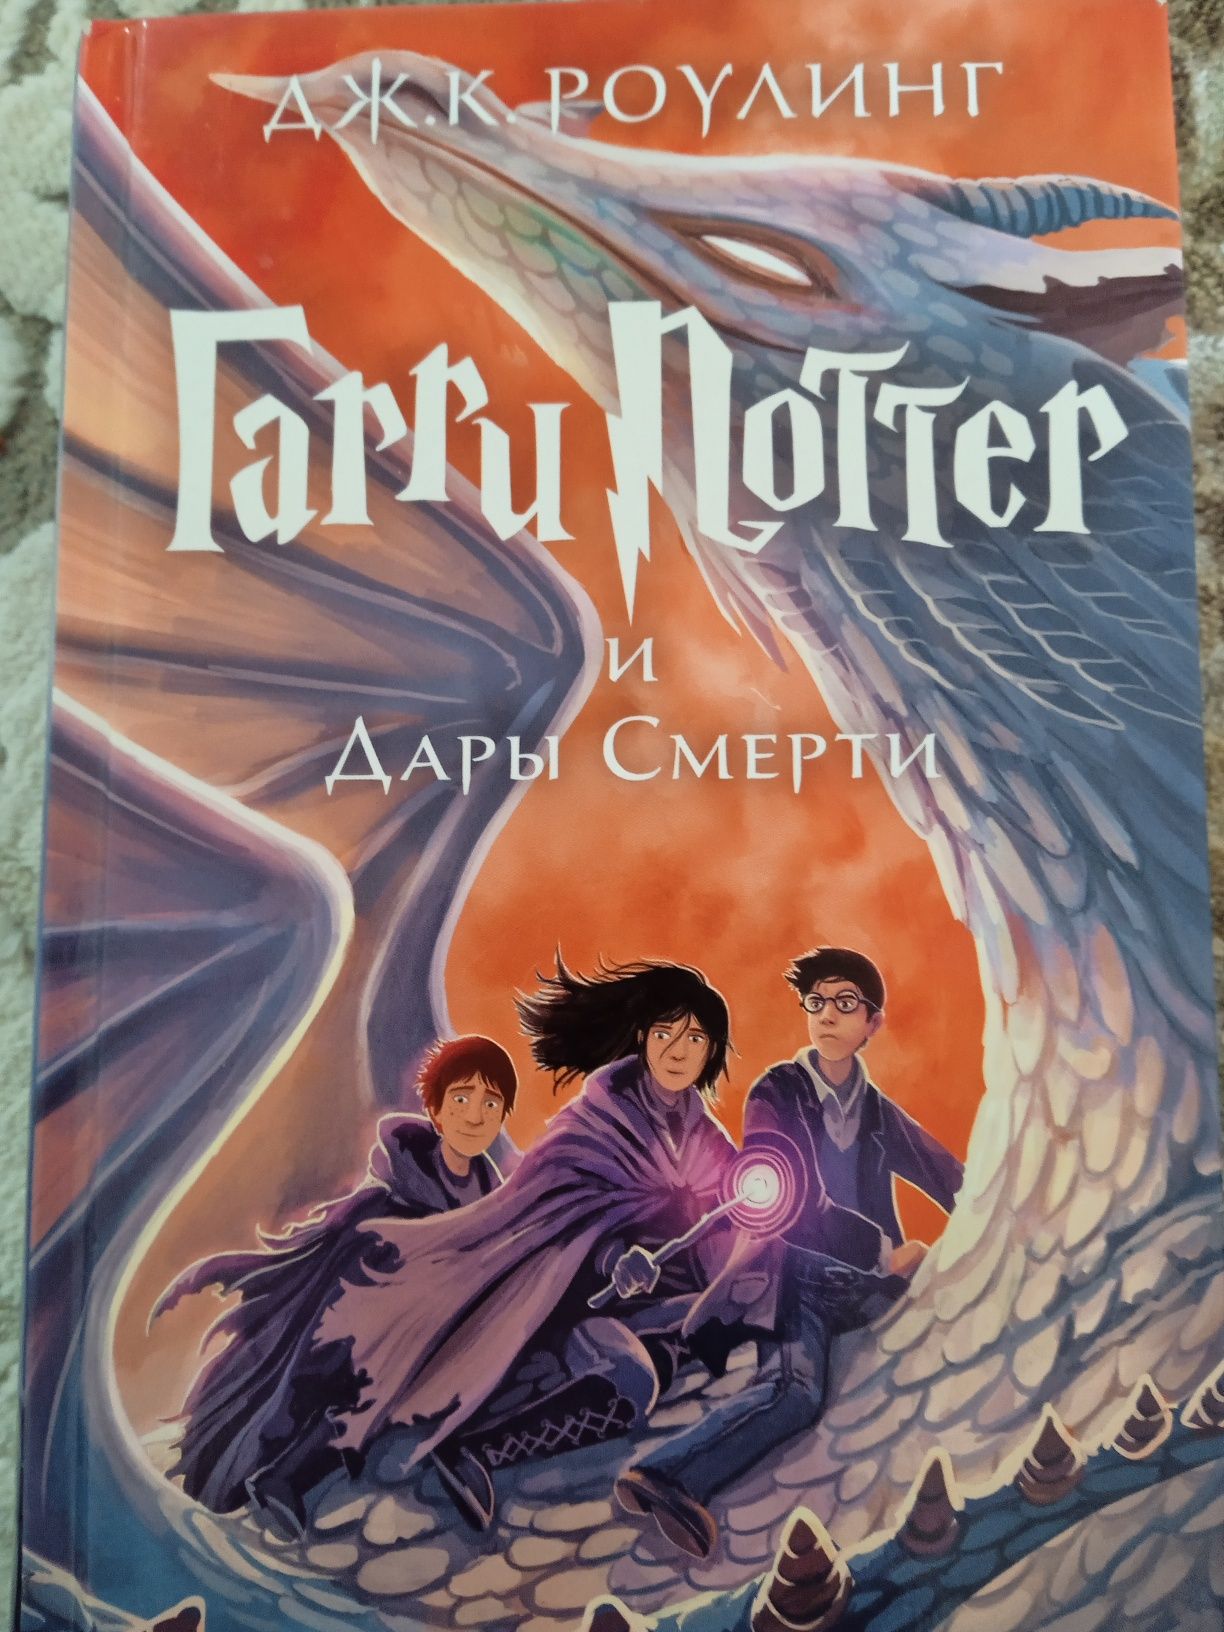 Гарри Поттер 3 книги каждая по 2500